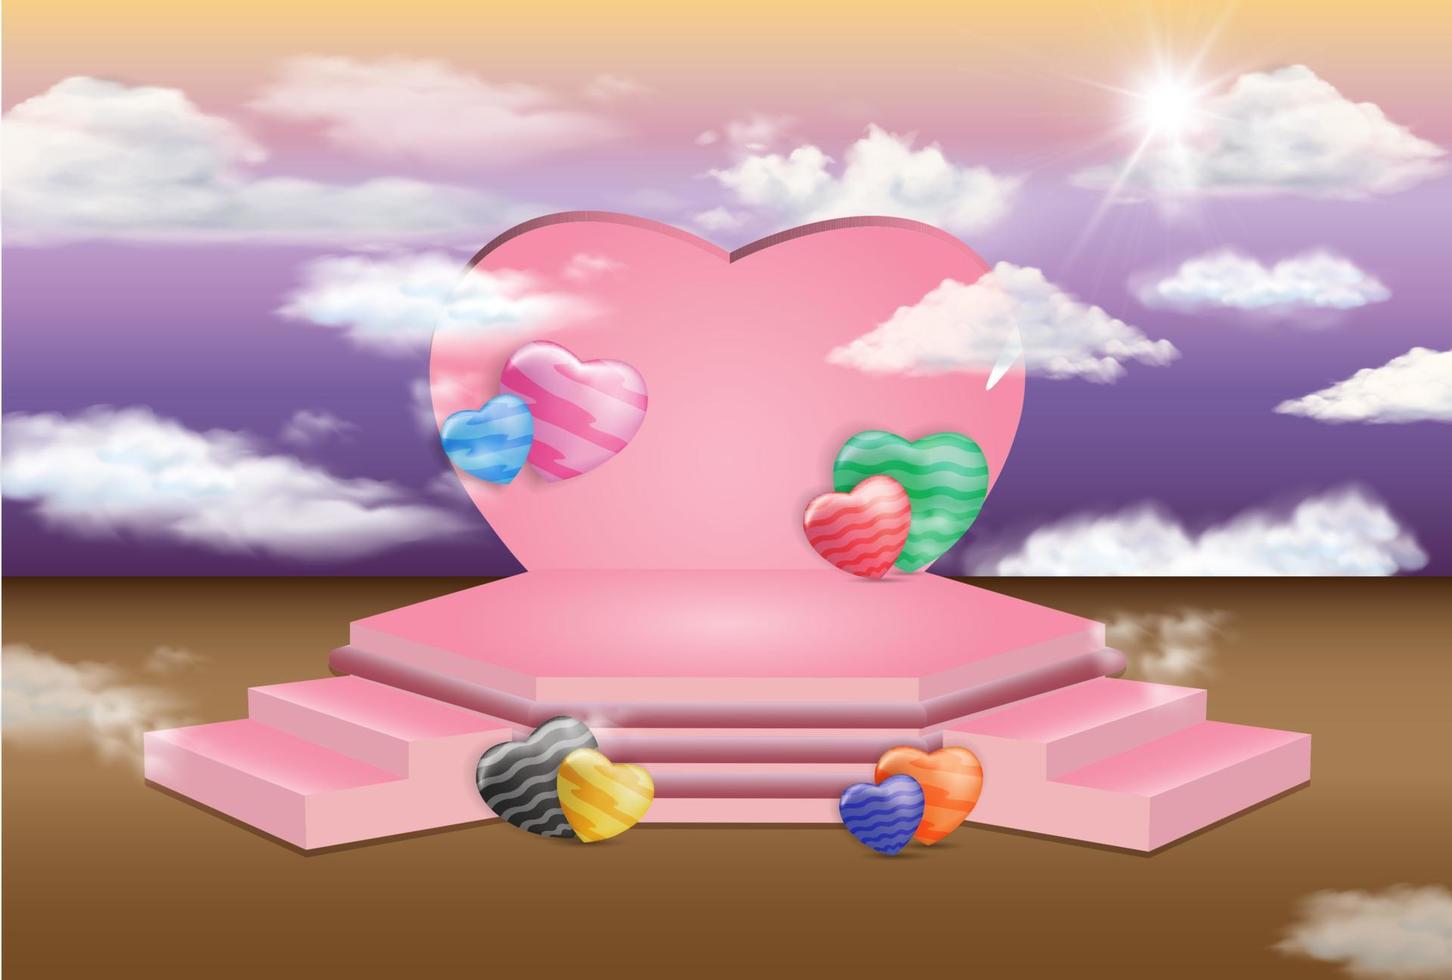 podio moderno, forma hexagonal y escaleras, escenario rosa decorado con amor, forma de nube y sol, concepto matizado romántico y natural, ilustración vectorial 3d de estilo plano vector